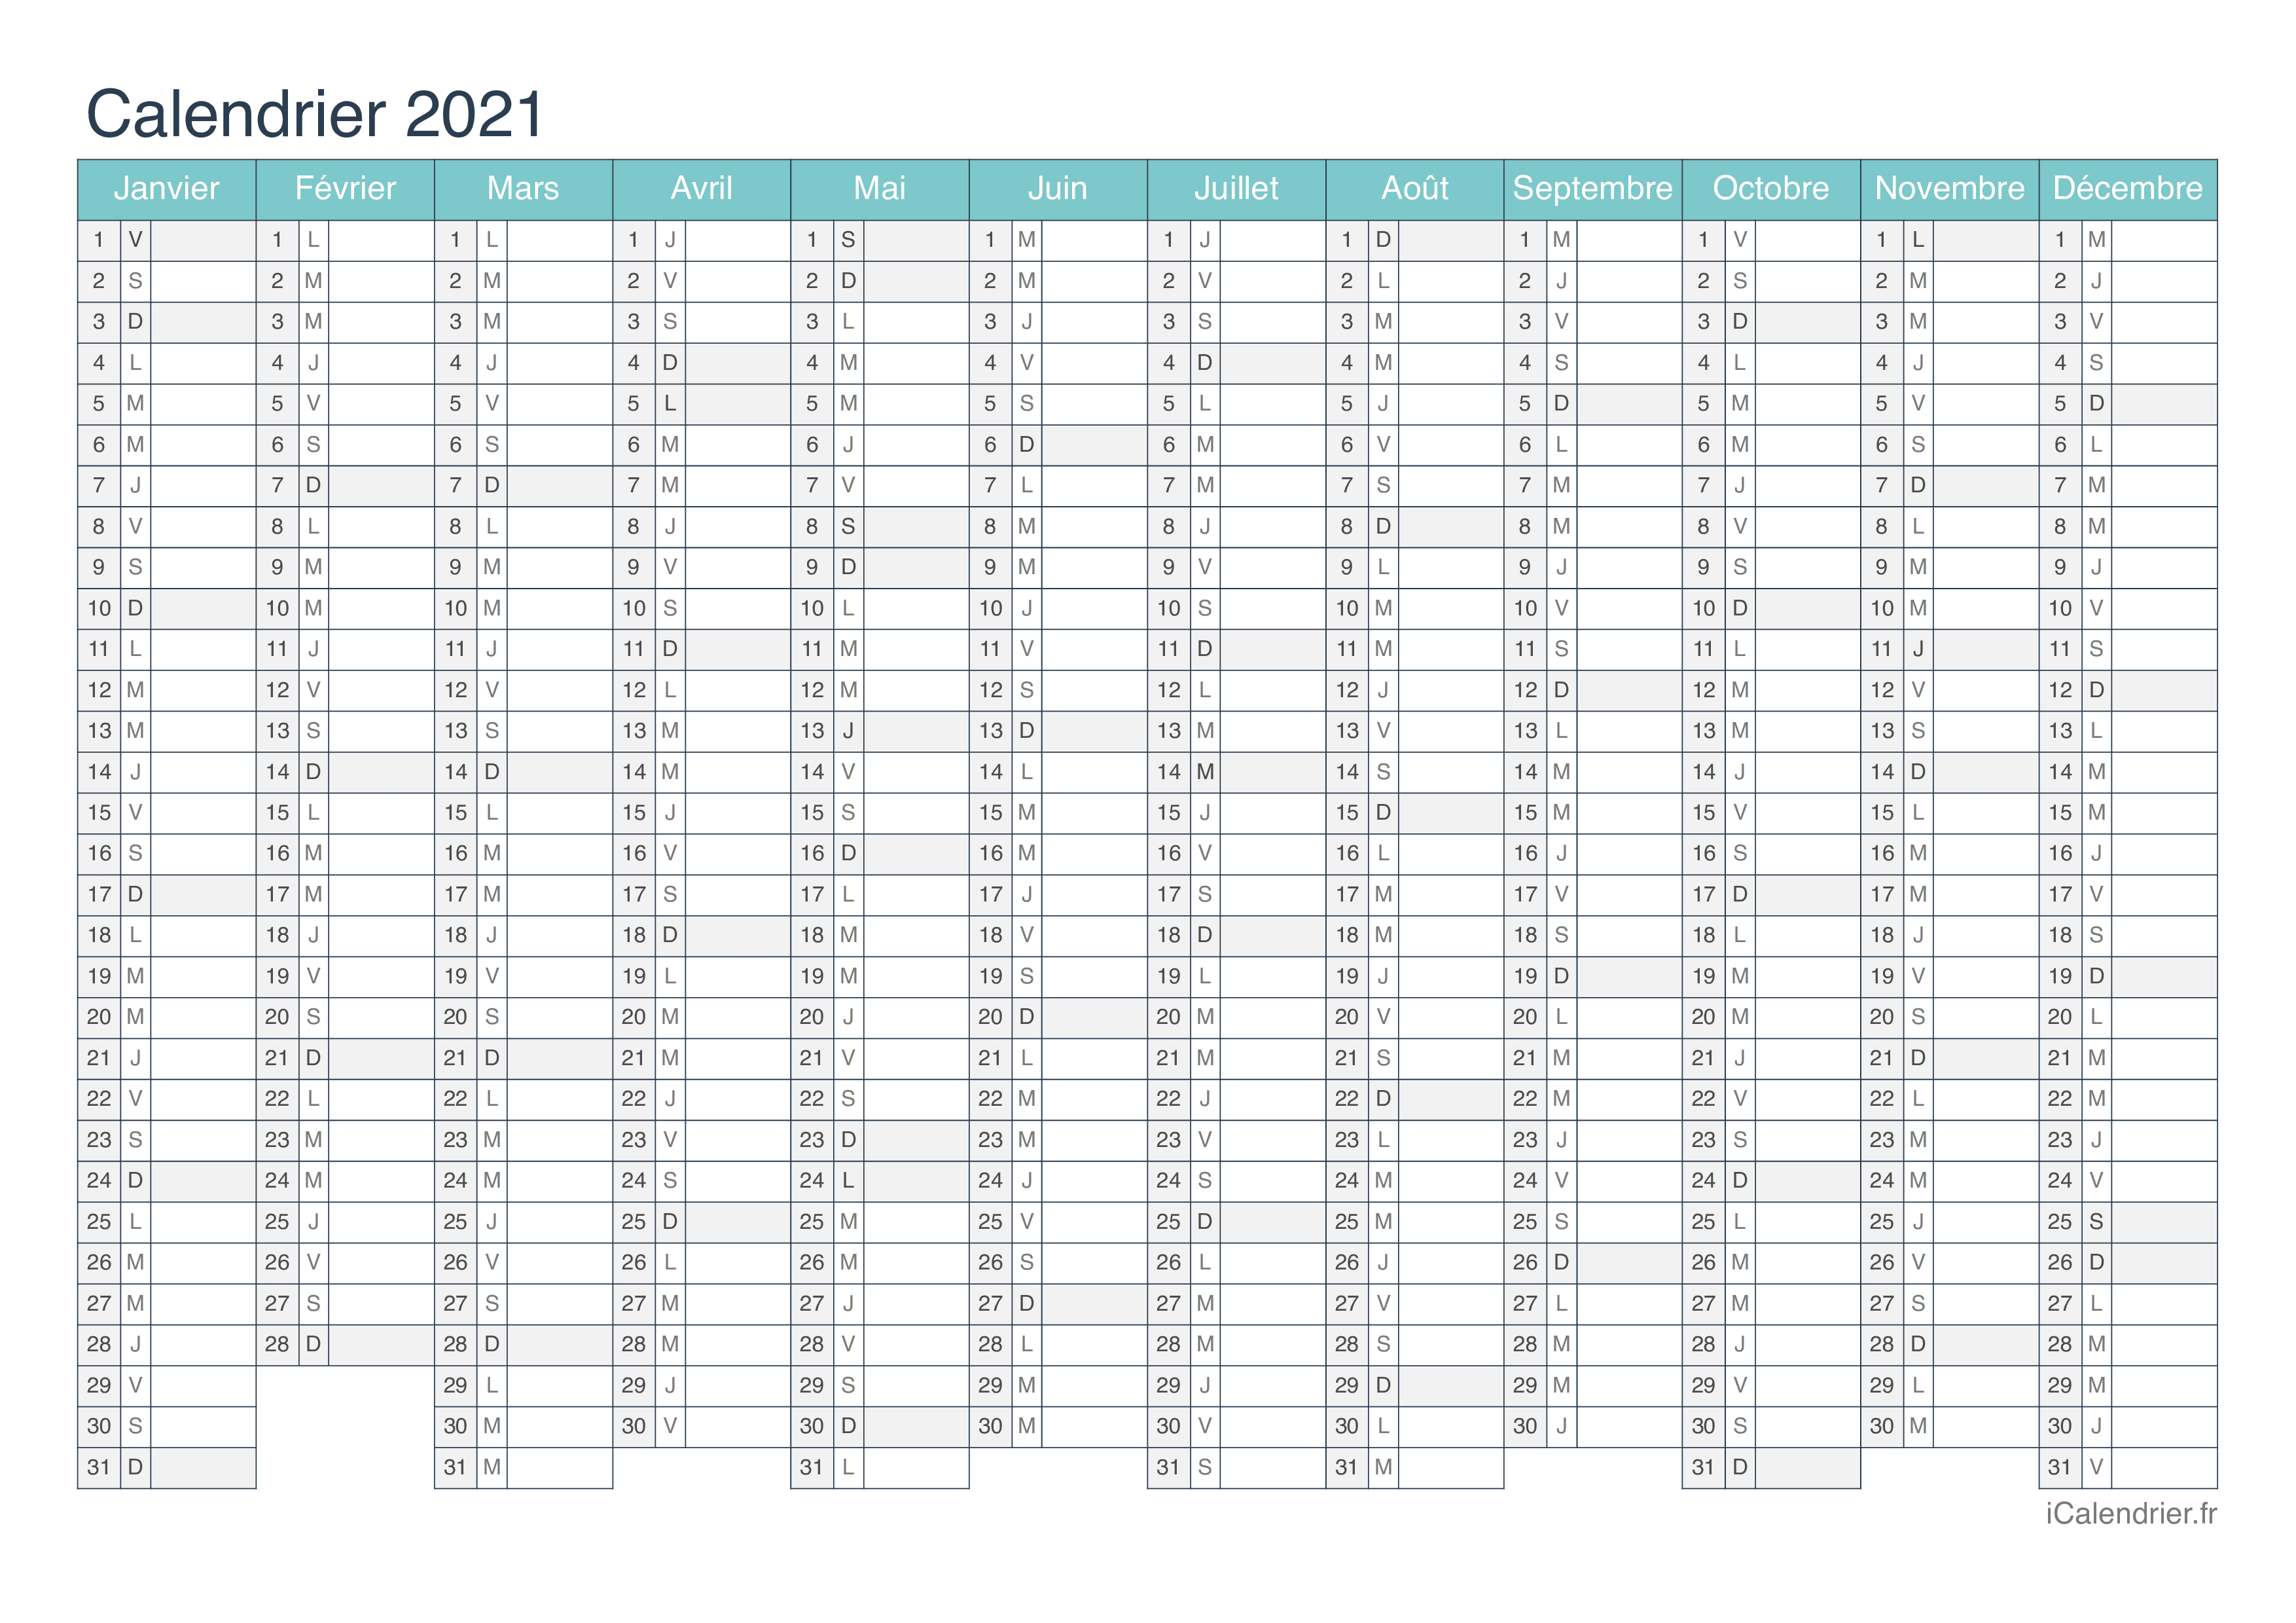 Calendrier 2021 2022 Excel Calendrier 2021 à imprimer PDF et Excel   iCalendrier